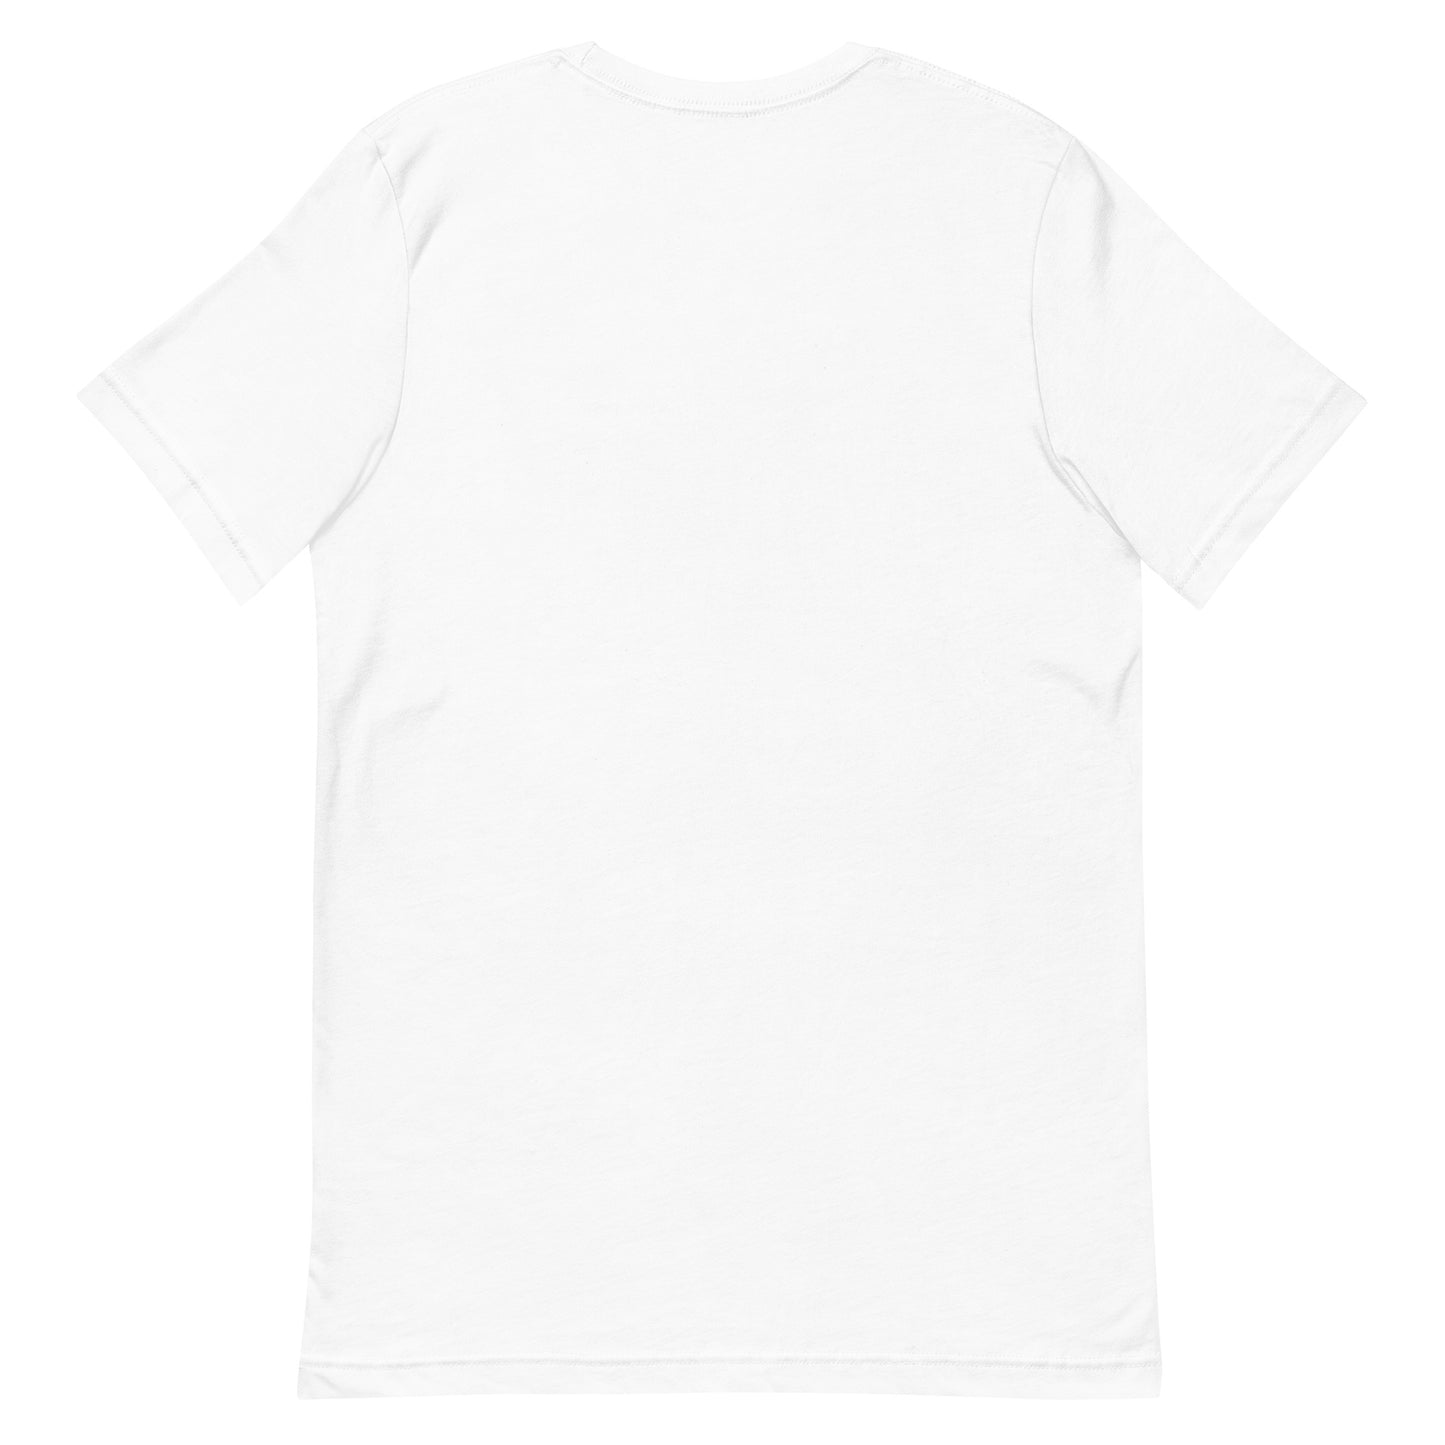 Unisex t-shirt "55 USHIROZUKE" White